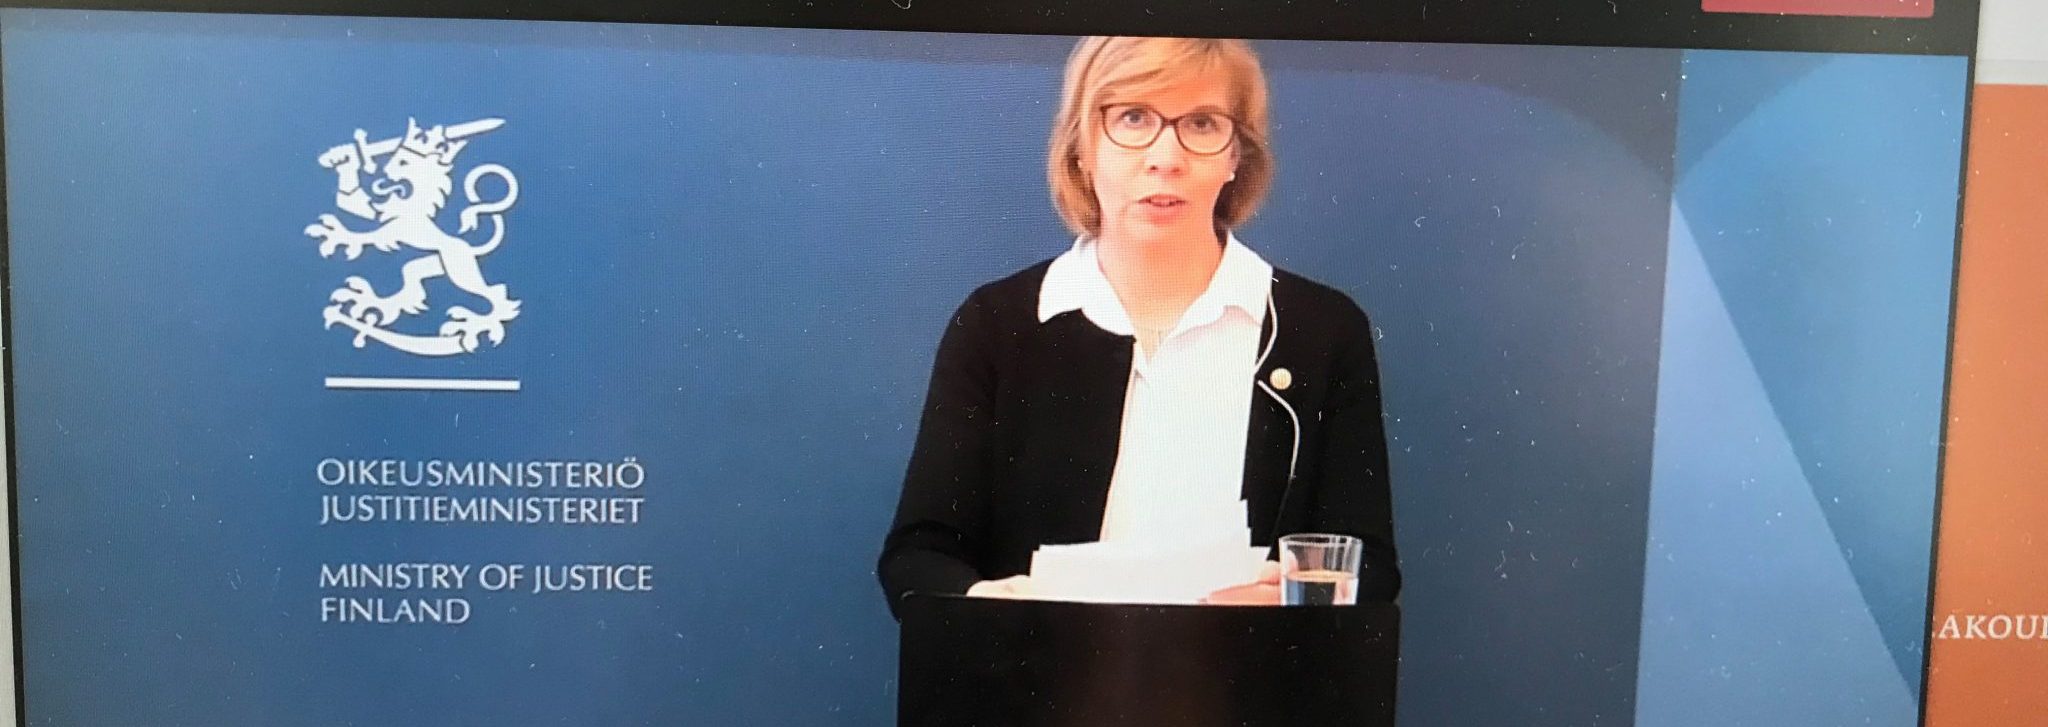 Oikeusministeri pitää puhetta puhujapöydän takaan, taustalla sininen seinä ja Suomen vaakuna.